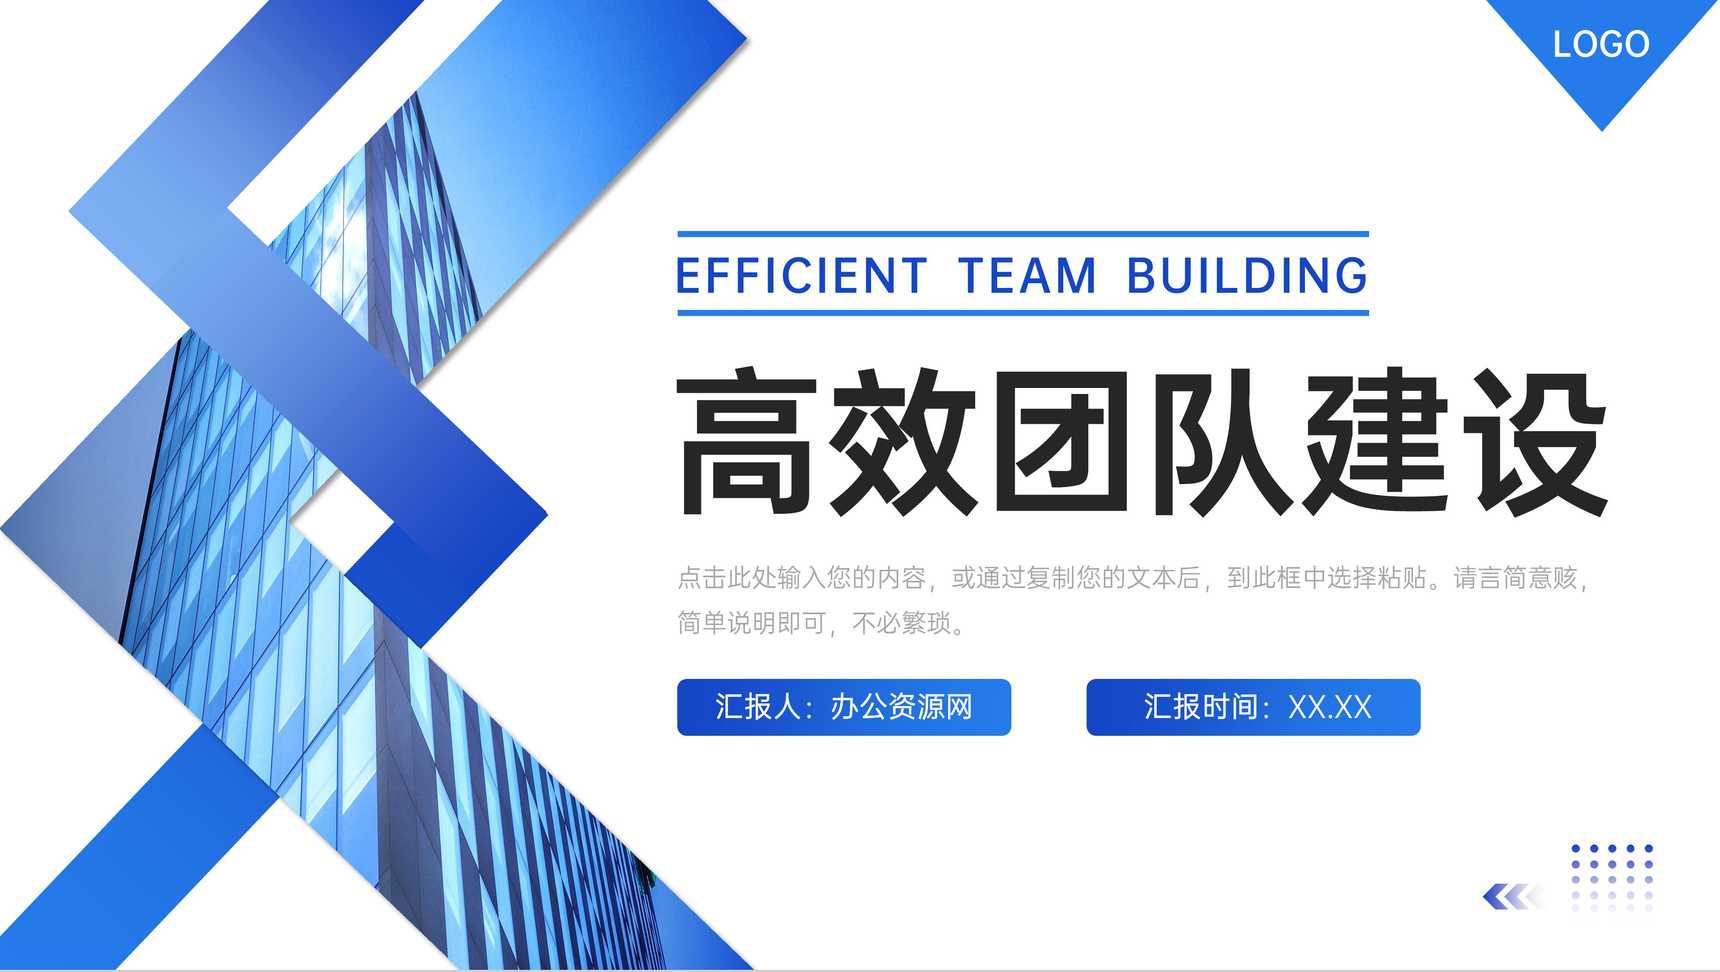 大气蓝色高效团队建设企业文化宣讲PPT模板-1